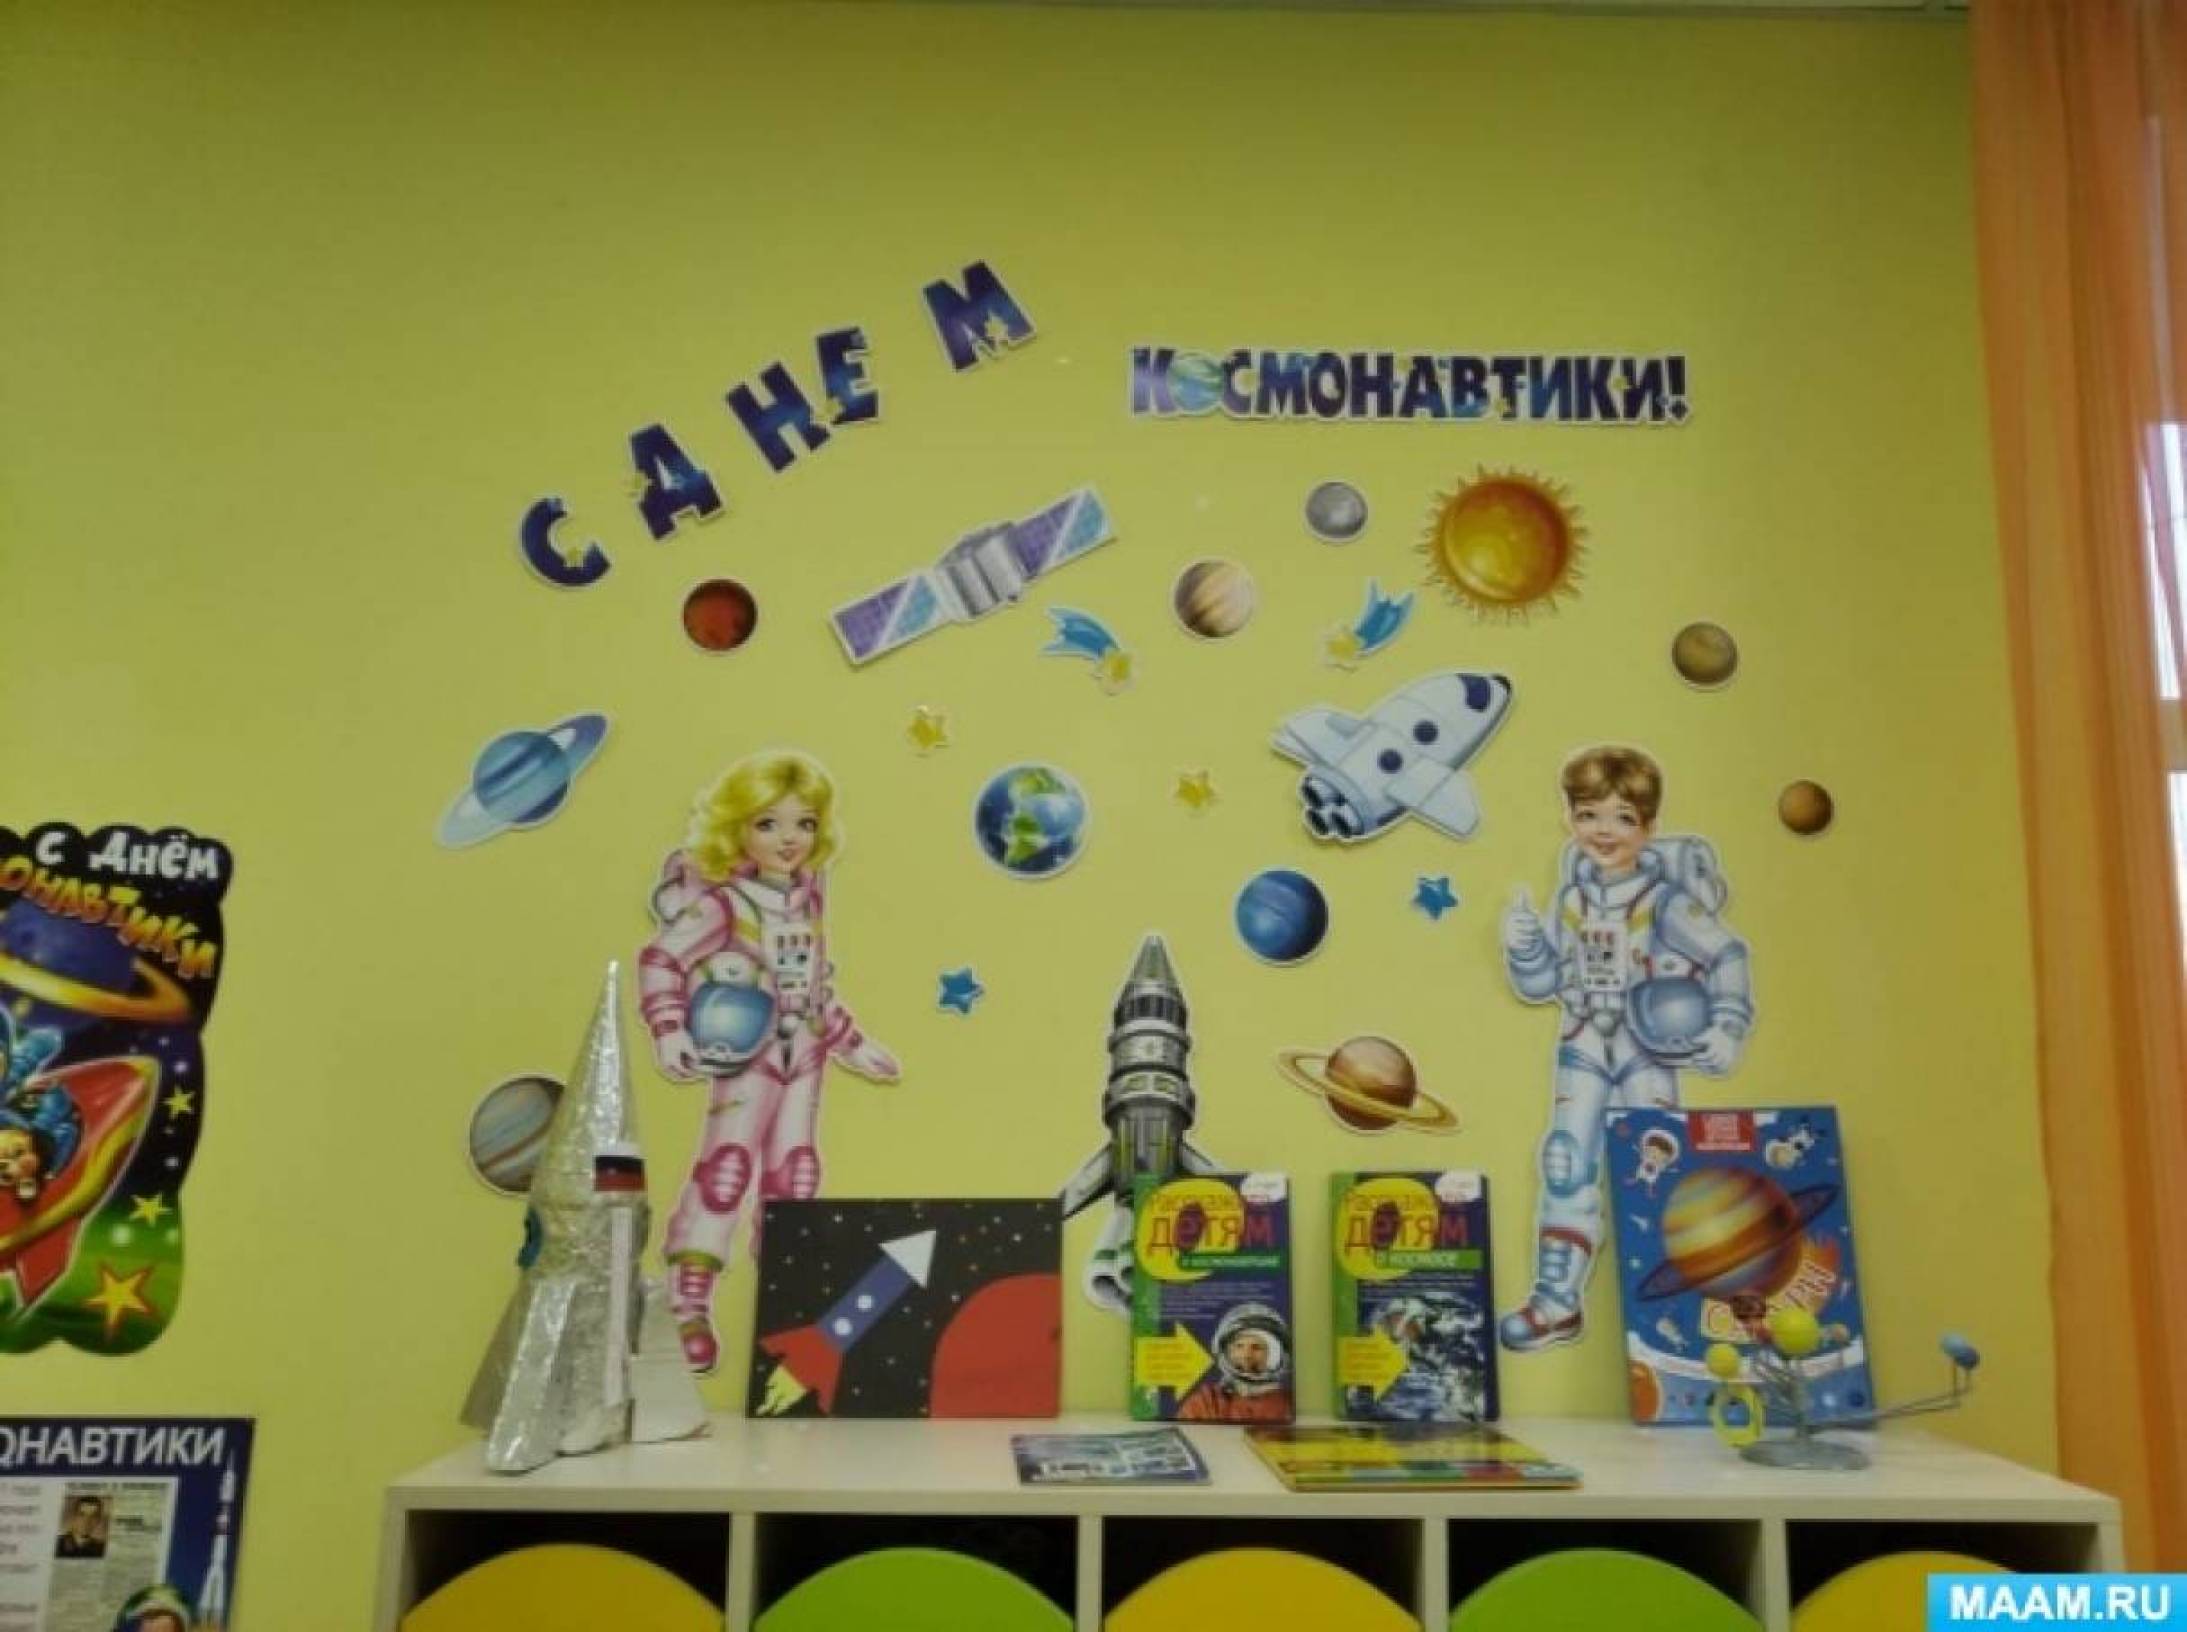 Оформление к дню космонавтики в детском саду. Украшение приемной ко Дню космонавтики в детском саду. Украшение группы ко Дню космонавтики. Оформление ко Дню космонавтики в детском саду. Украшение группы ко Дню космонавтики в детском саду.